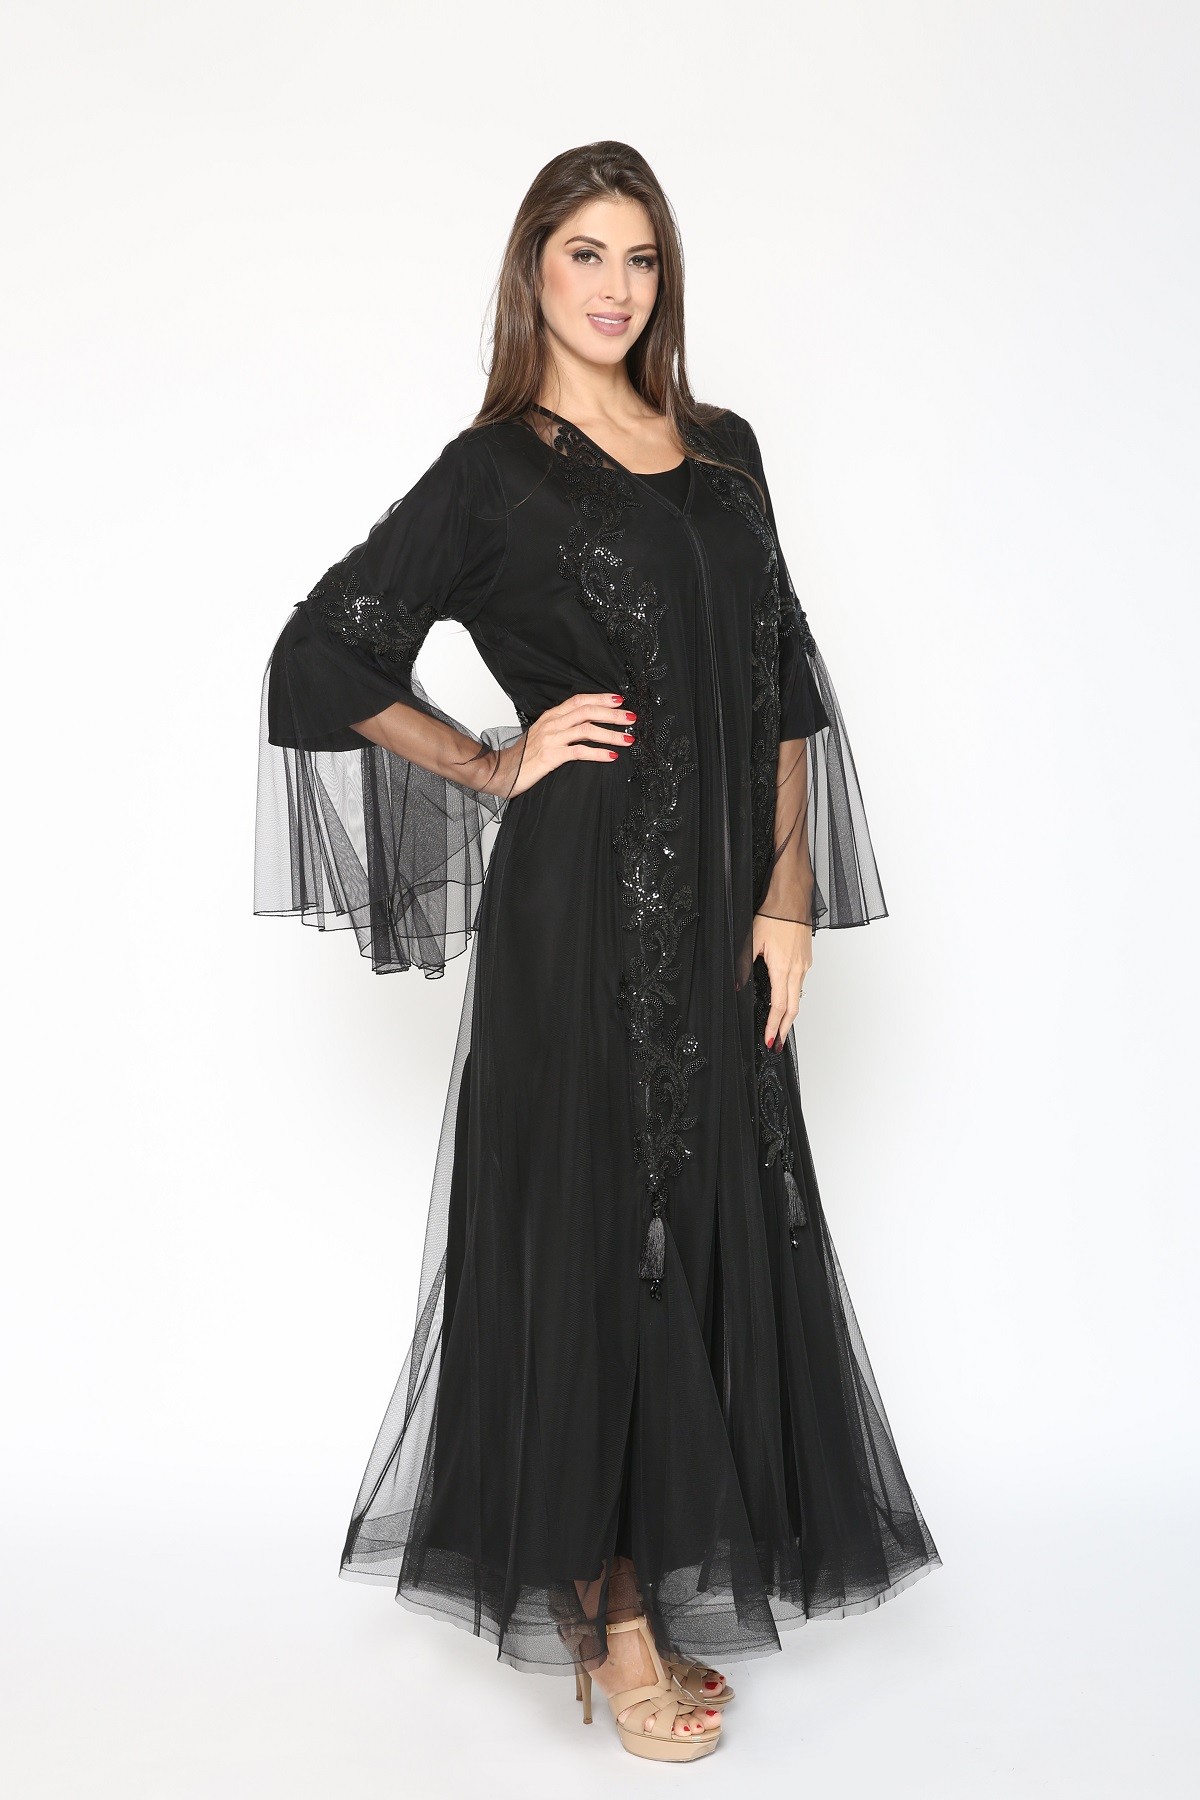 Shop Luxury Abayas, Kaftans,Dresses for Online